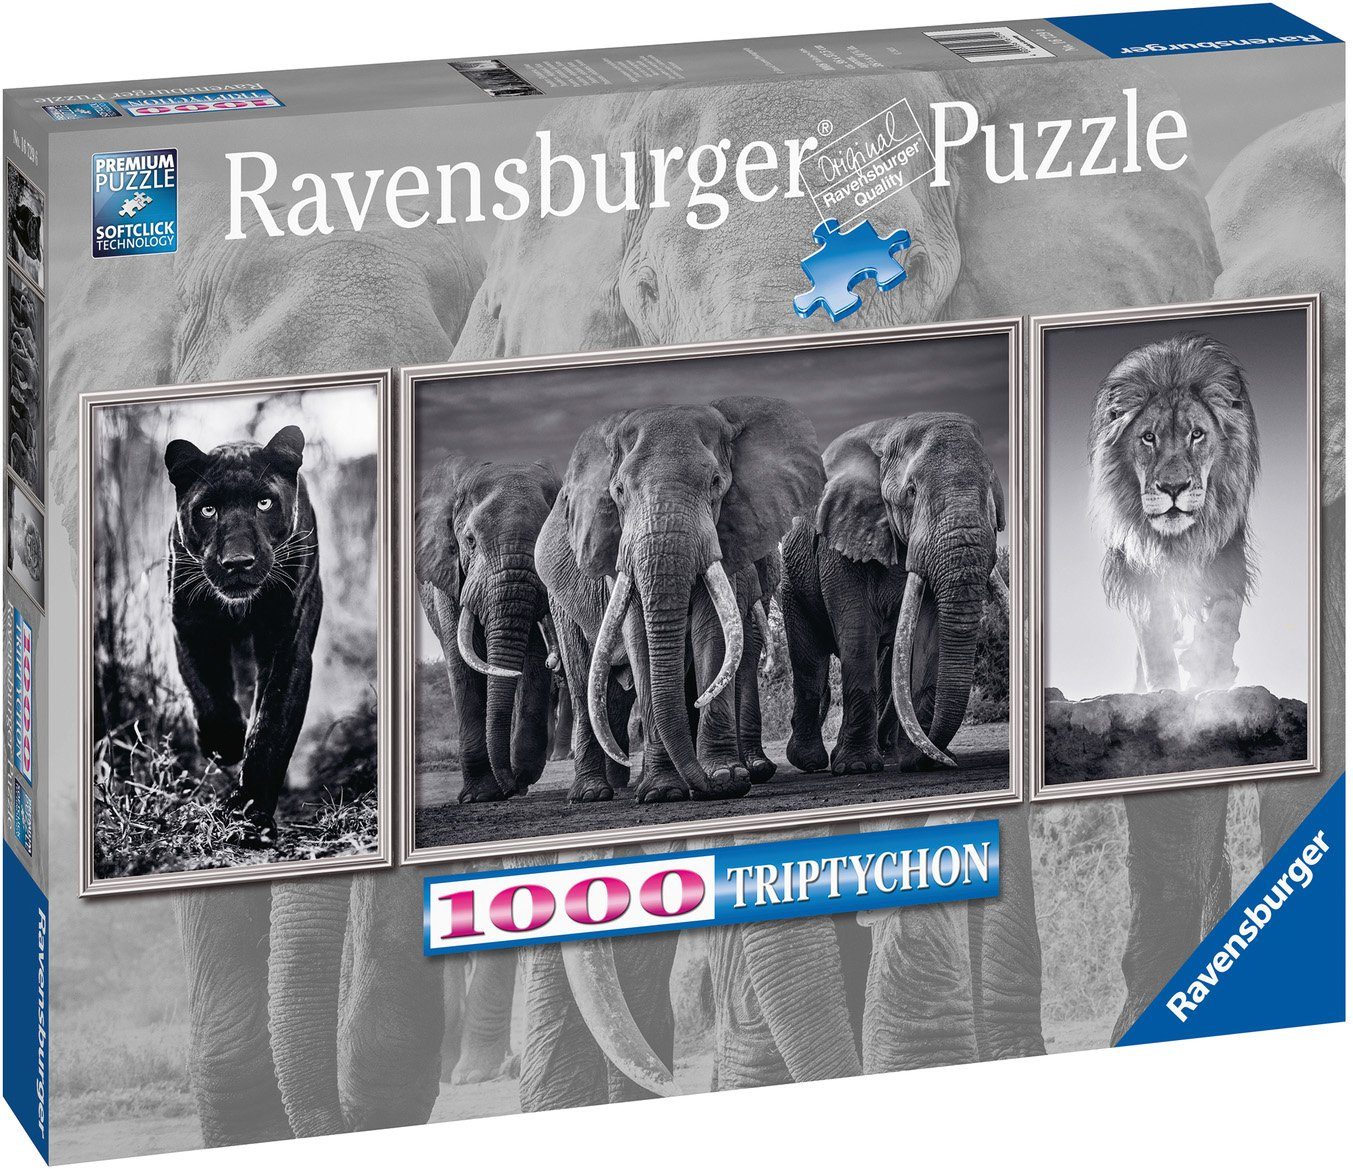 Ravensburger Puzzle Panter, Elefanten, Löwe, Puzzleteile, - Triptychon; - Germany FSC® in 1000 schützt Wald weltweit; Made